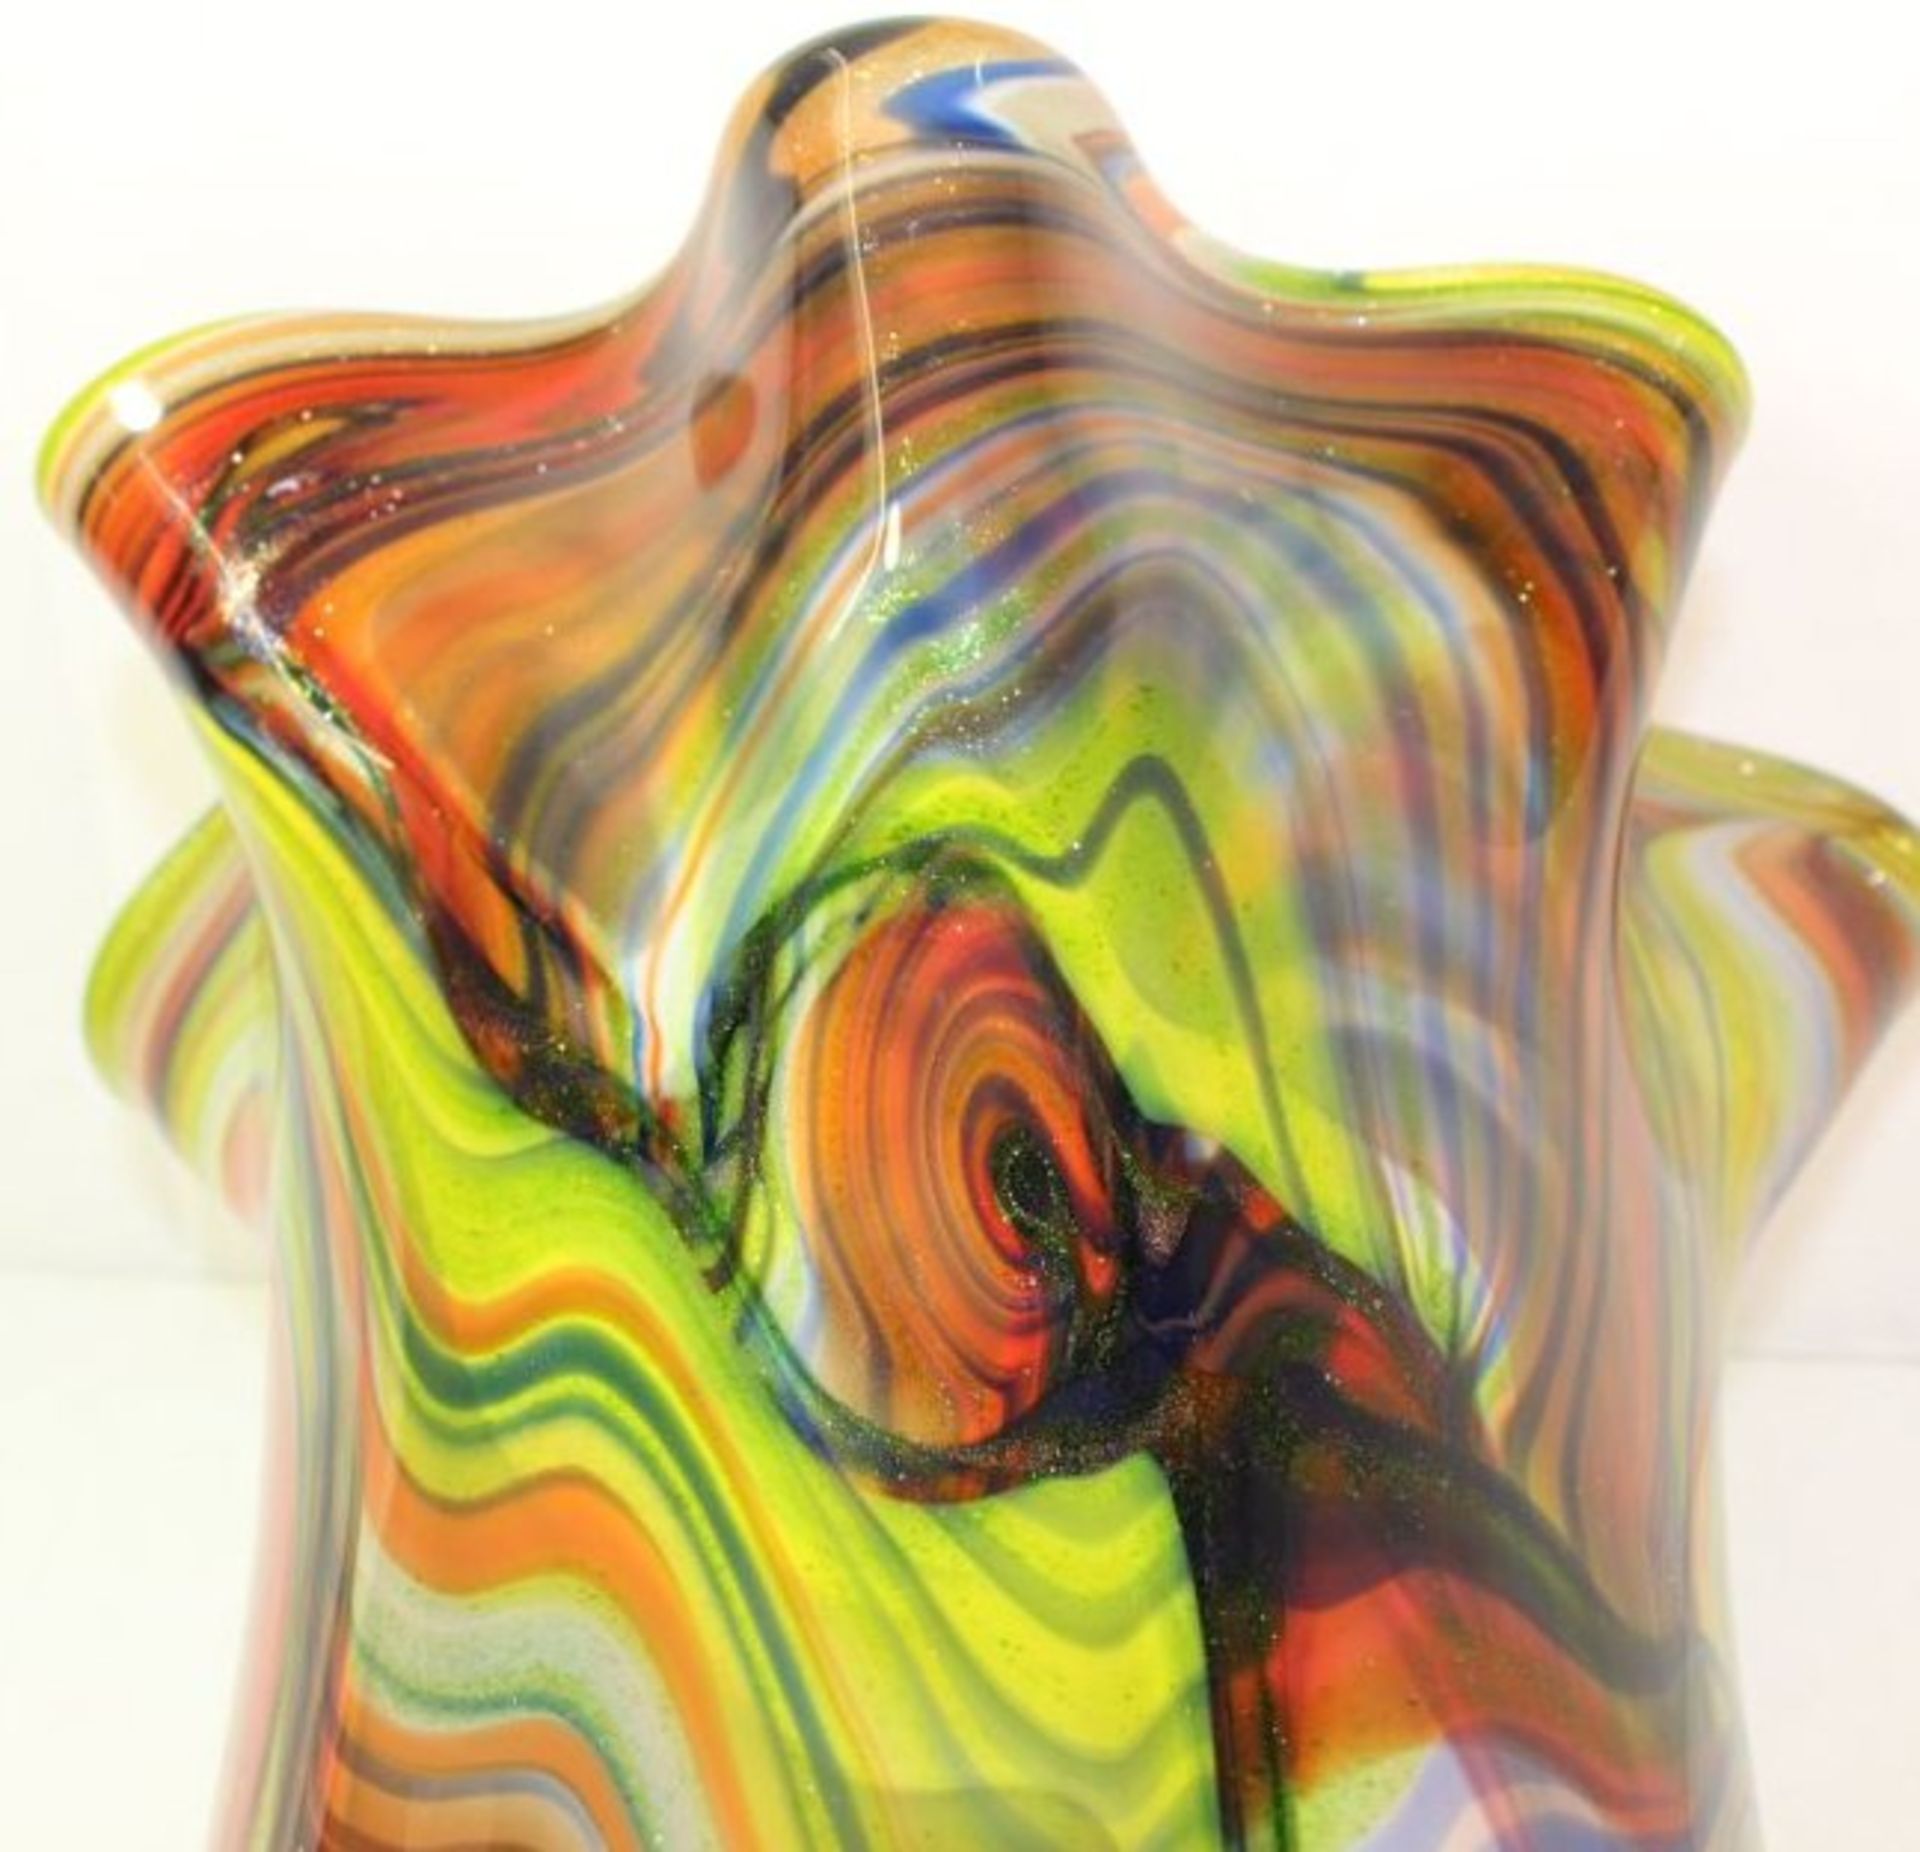 hohe Kunstglas-Vase, farbige Einschmelzungen, H-45cm.- - -22.61 % buyer's premium on the hammer - Bild 7 aus 7